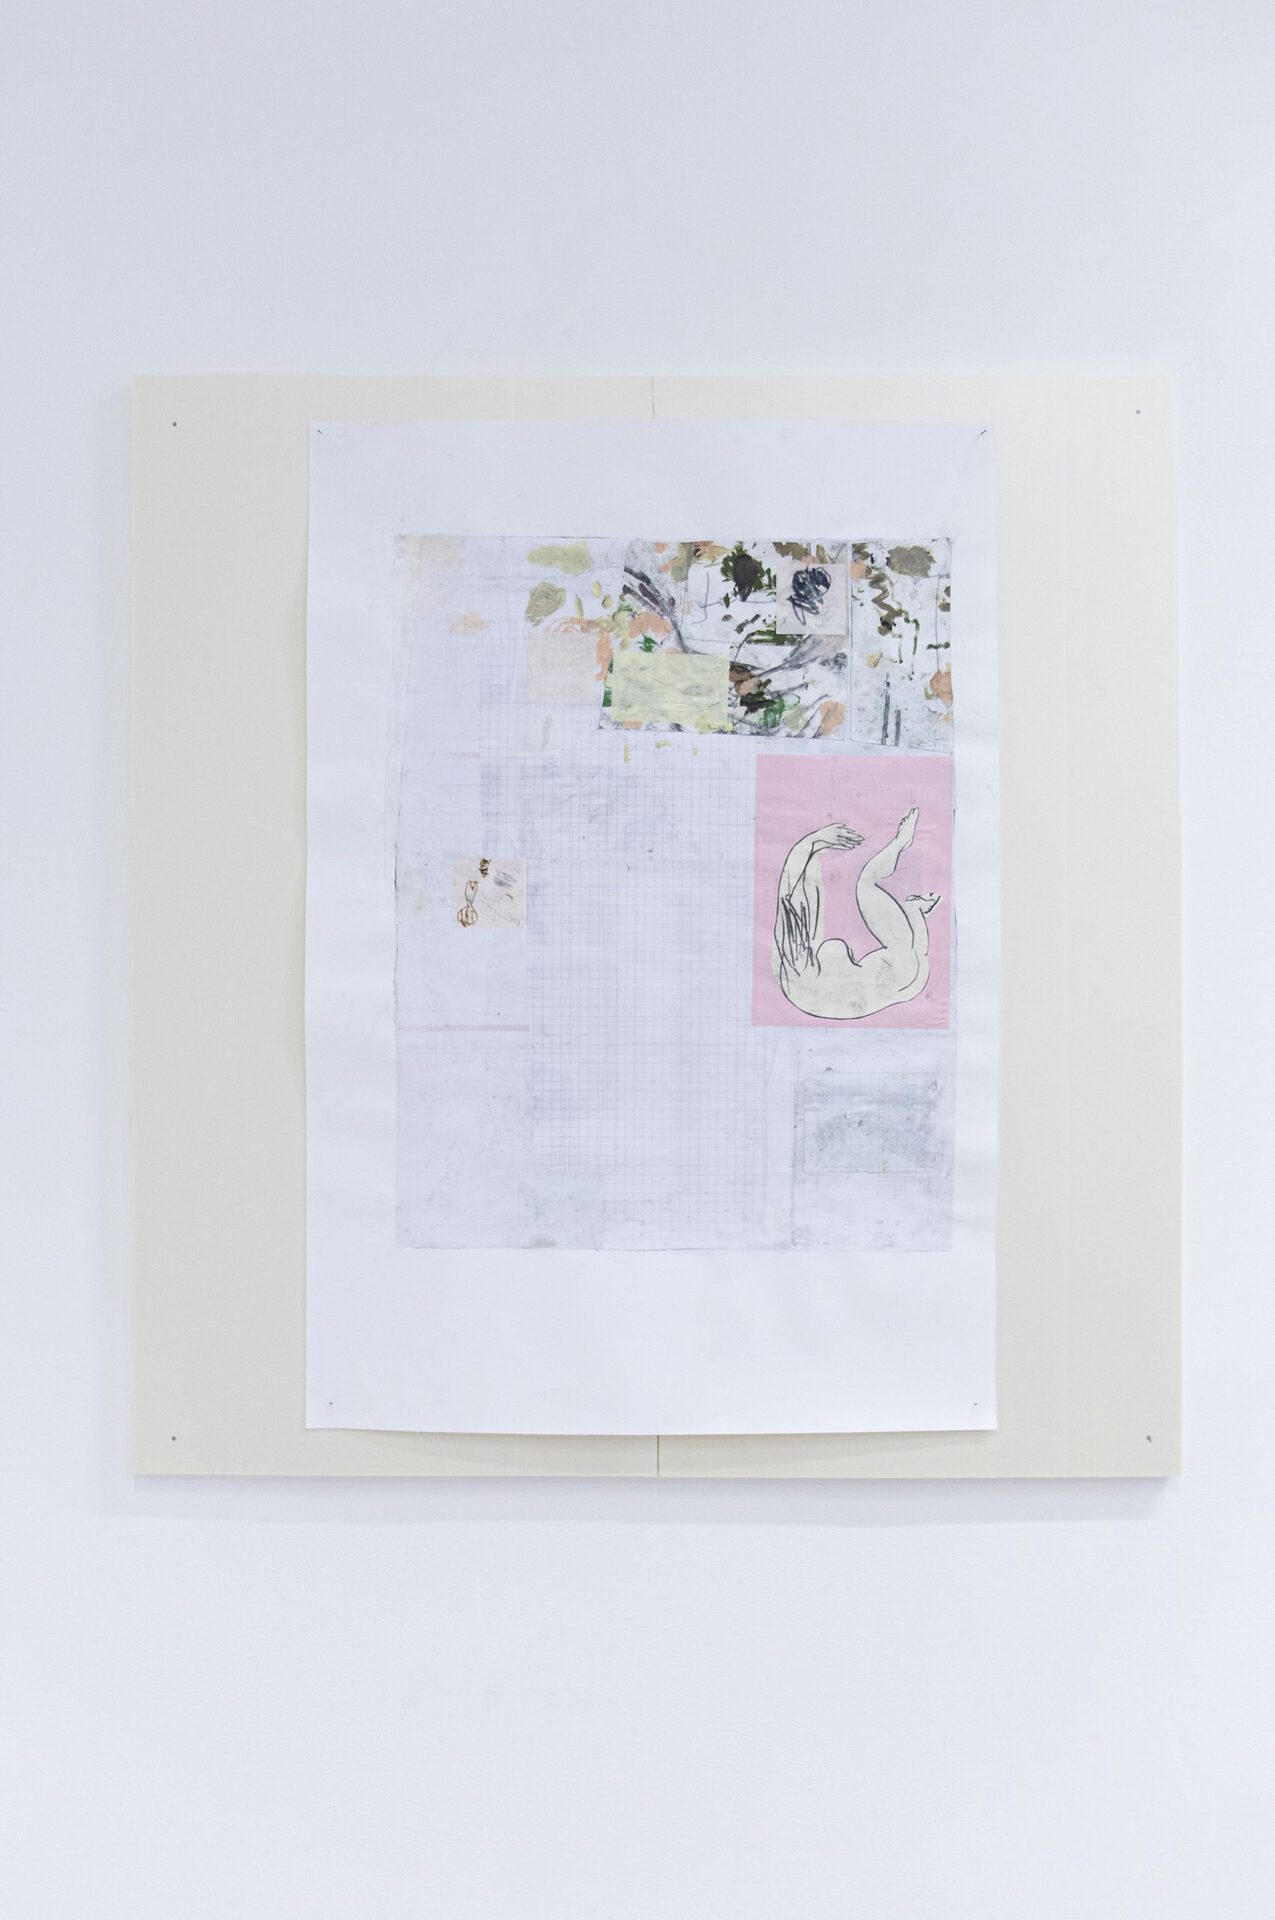 Gregory Cuquel, la ritournelle, 2021. Mixed media on paper, 110 x 75 cm © Pierre Poumet